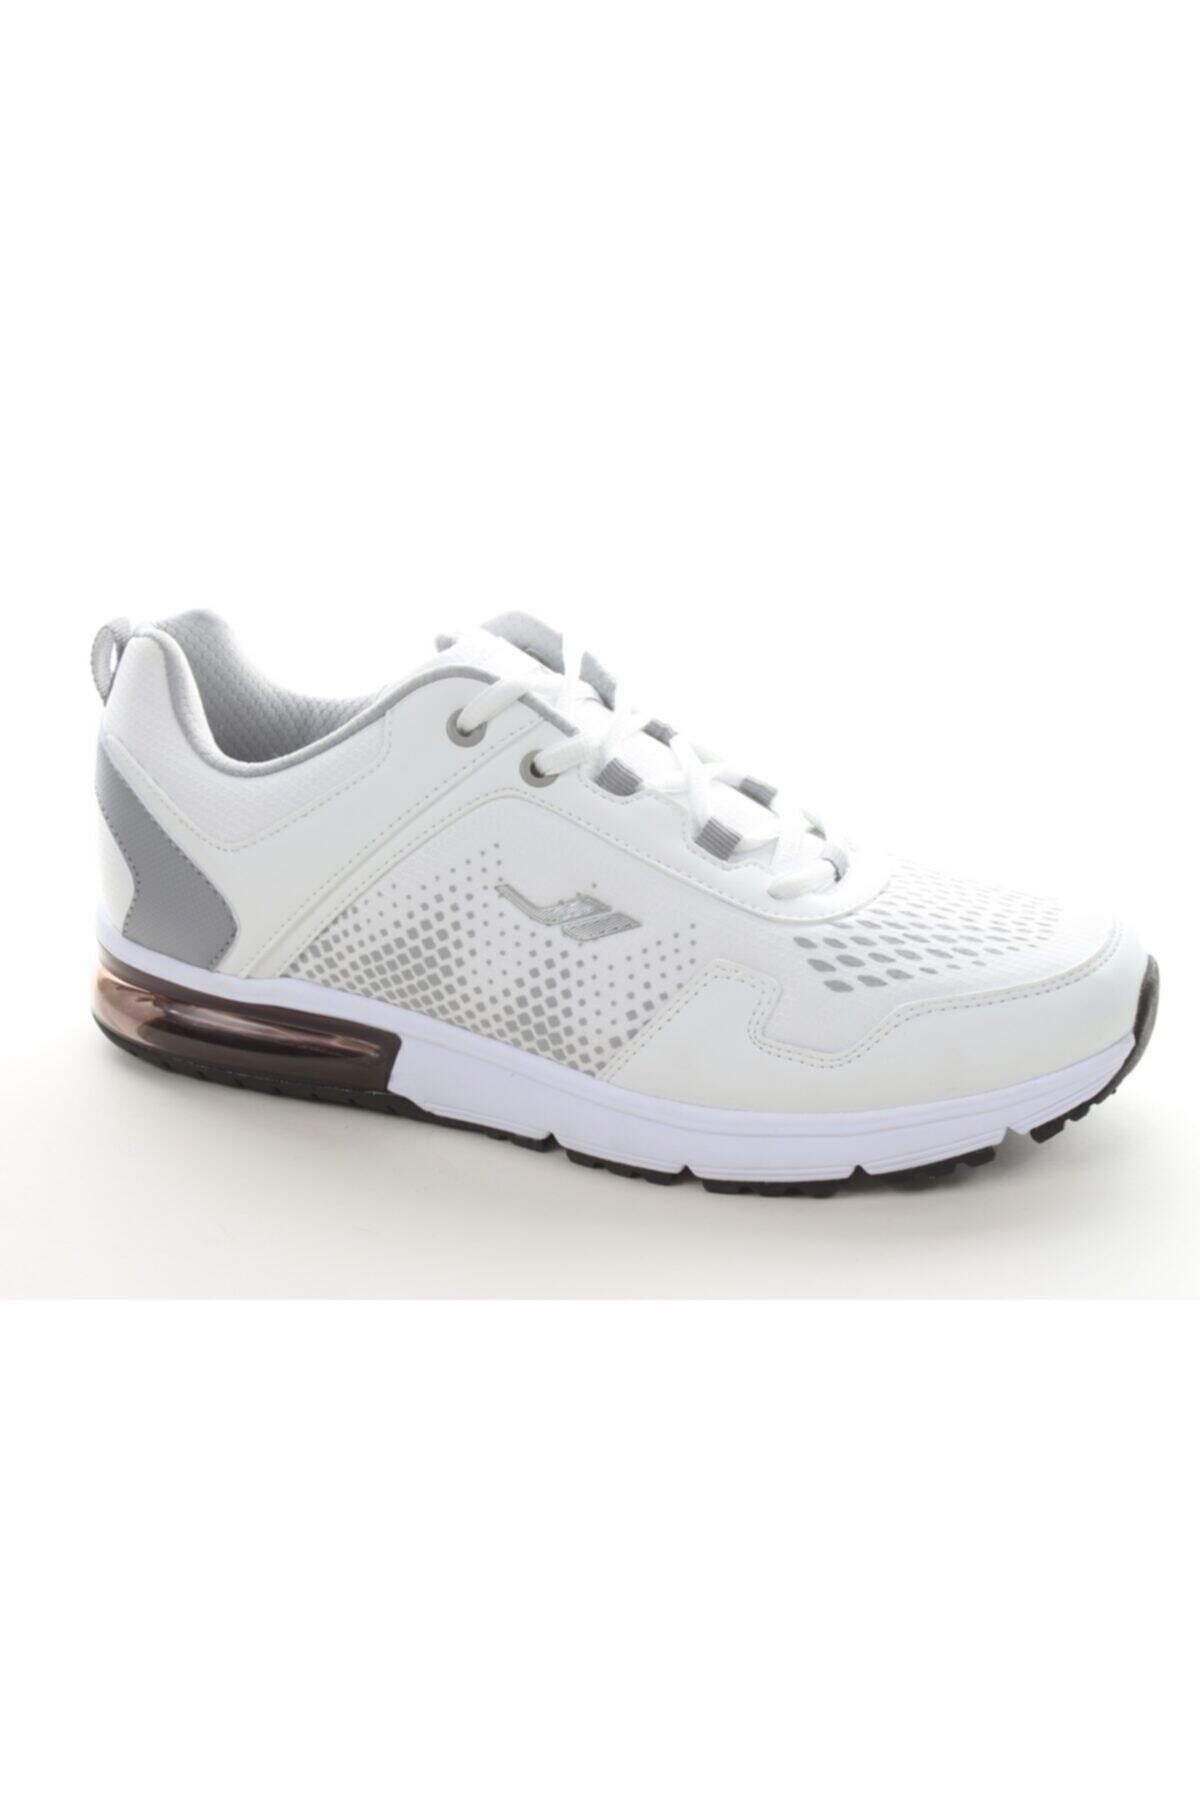 Lescon Erkek Beyaz Günlük Spor Ayakkabı L-5505